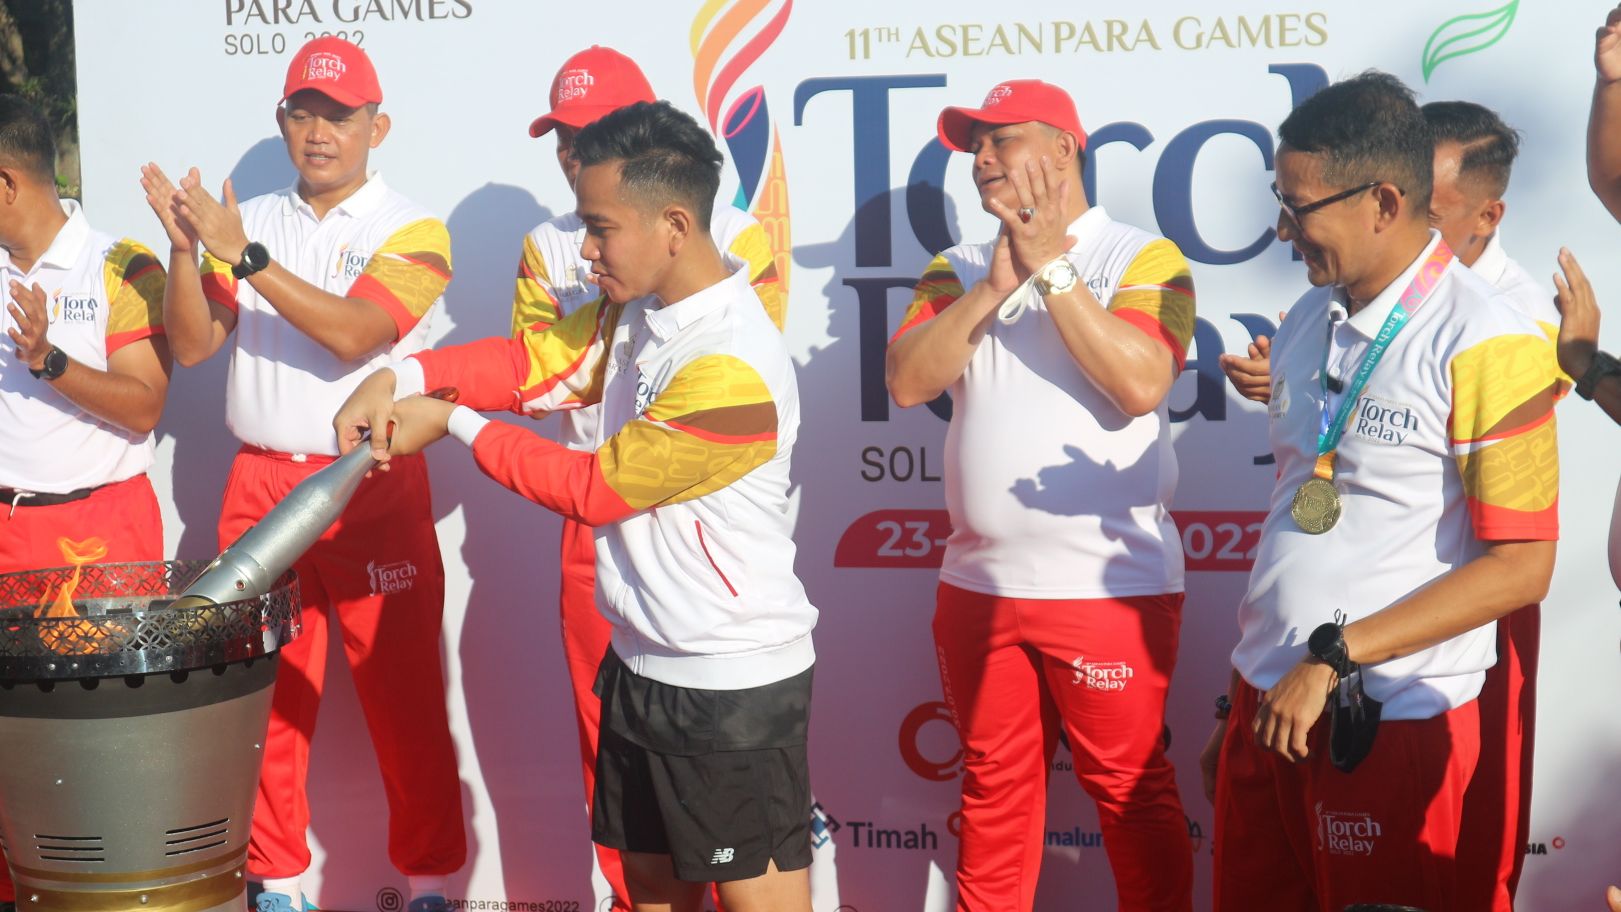 Menparekraf Indonesia, Sandiaga Uno (paling kanan) saat mendampingi Gibran Rakabuming Raka menyalakan mini-kaldron di depan Balai Kota Surakarta yang jadi puncak dari torch relay ASEAN Para Games 2022 yang digelar pada 23-24 Juli 2022